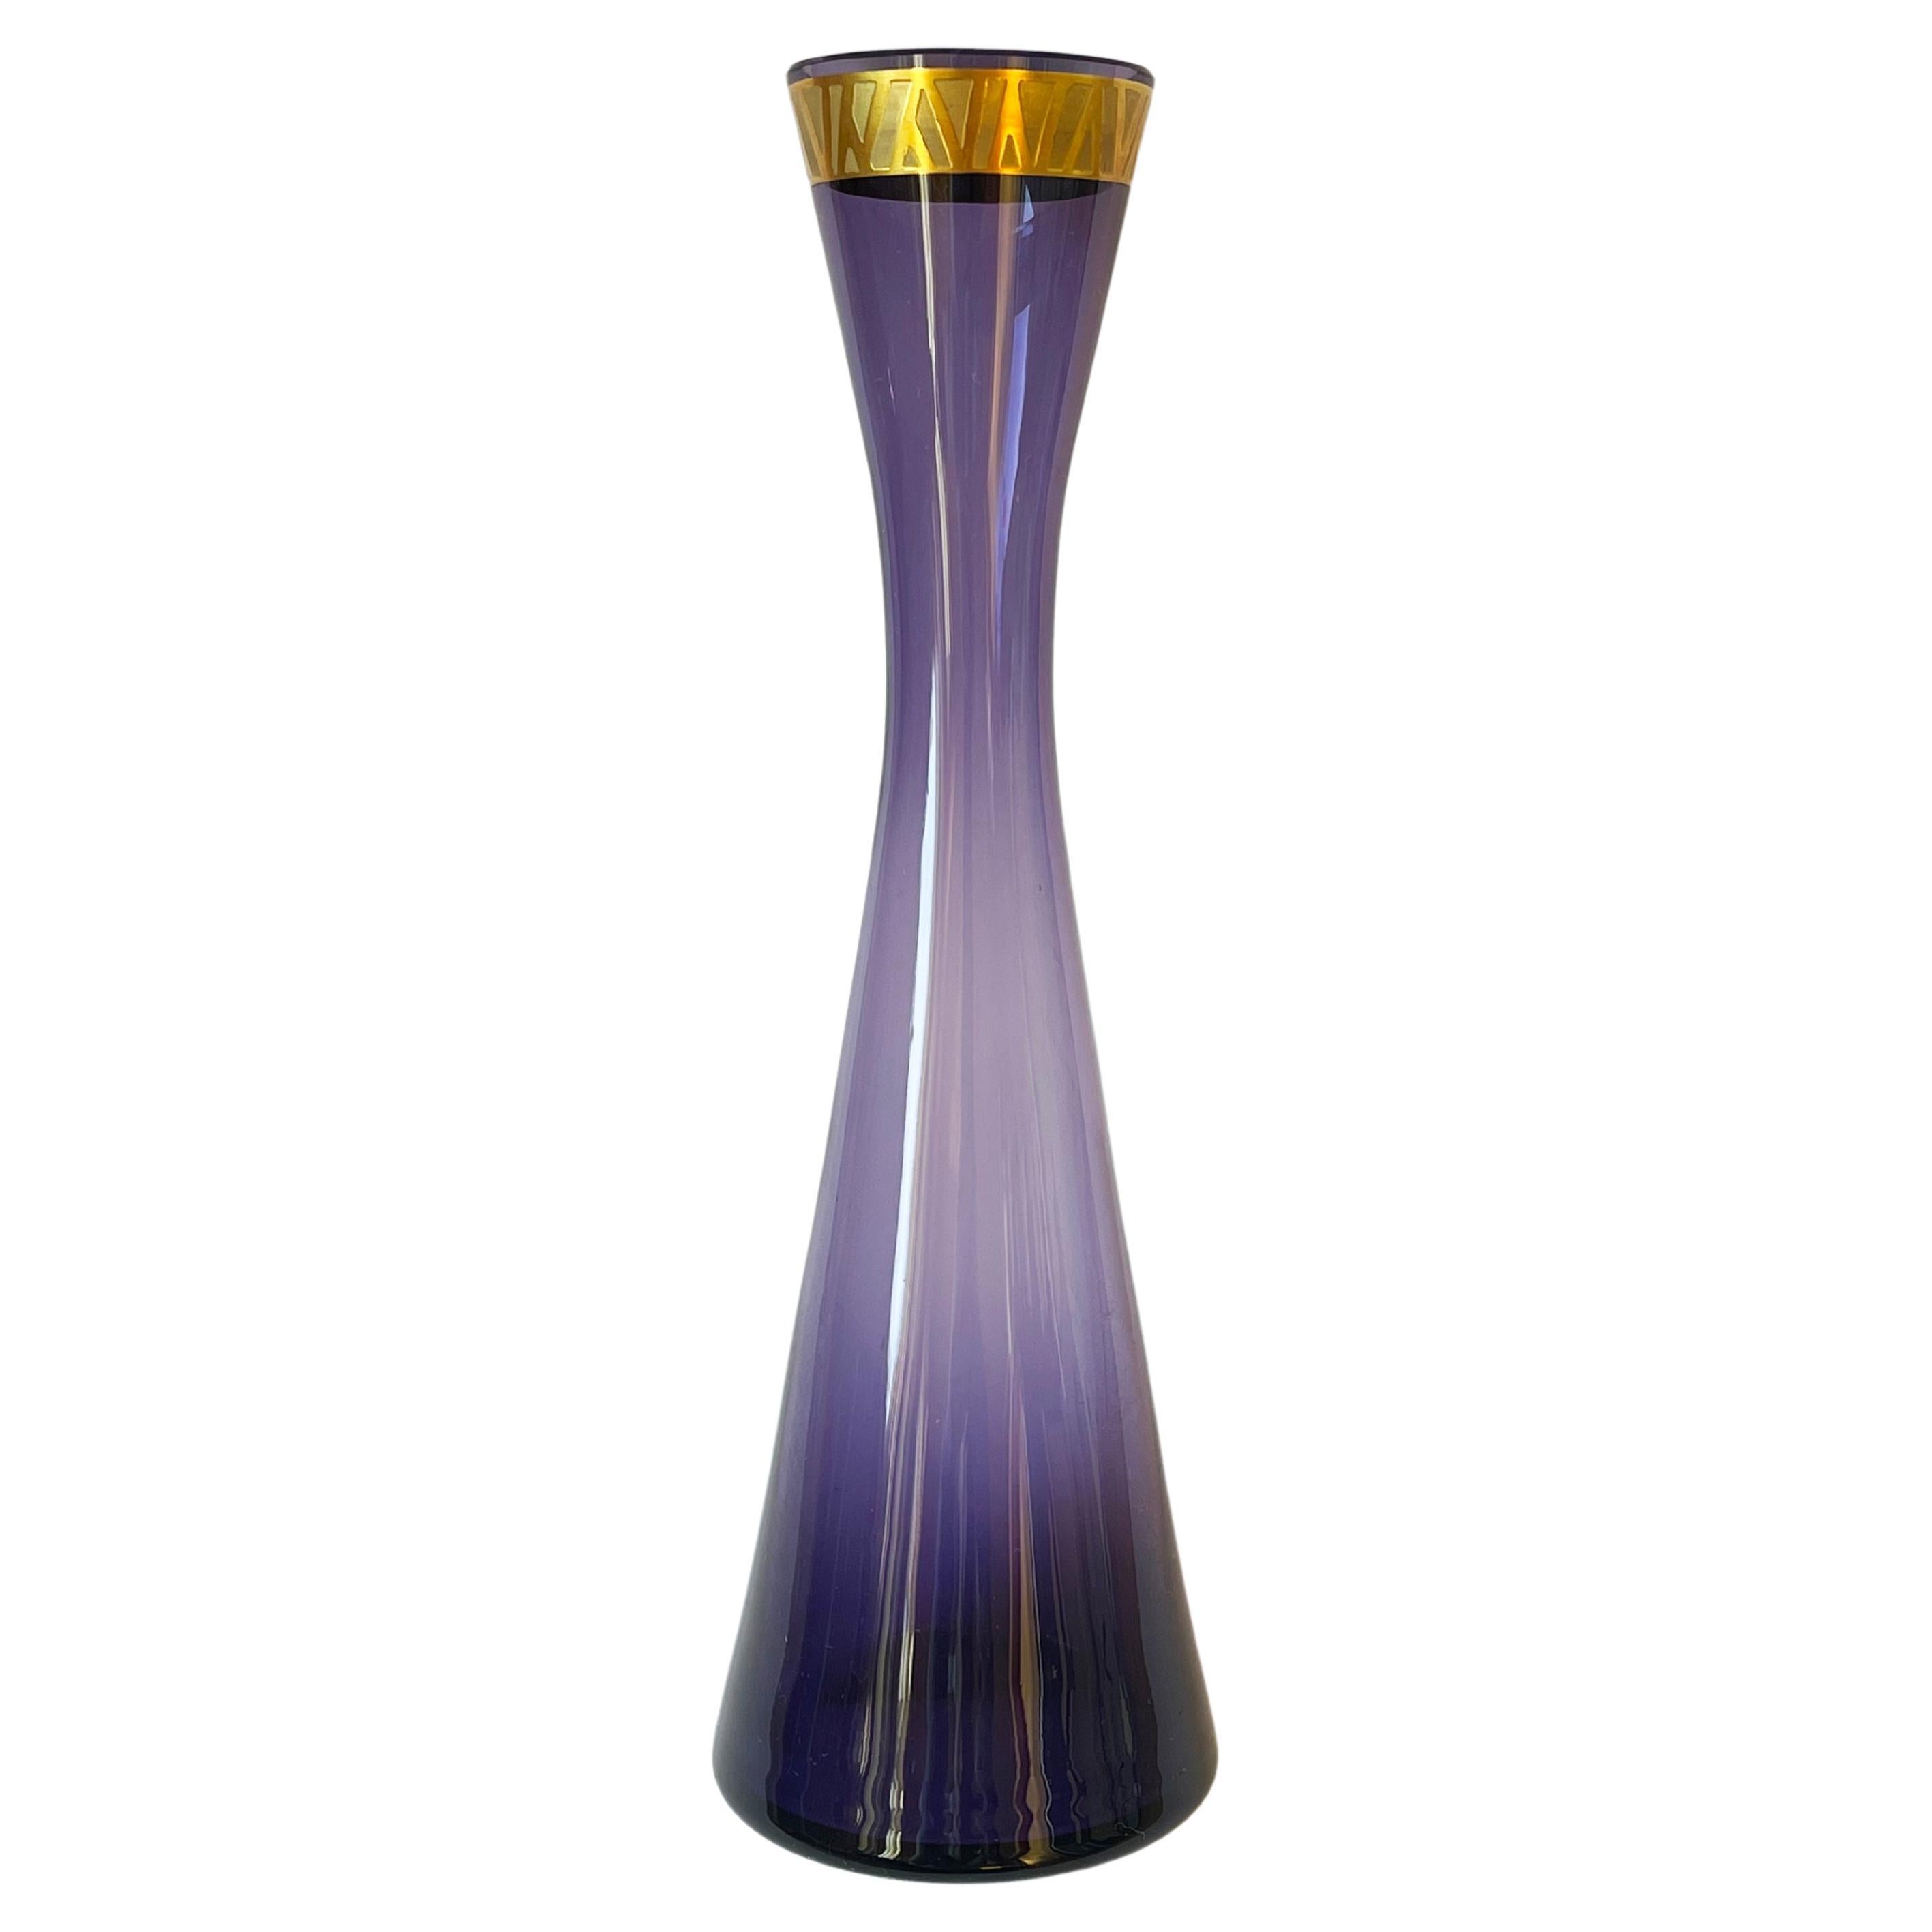 Fantastique, placé à l'époque du verre d'art allemand du milieu du siècle.
Le vase est en verre violet, le bord est taillé à la main, la frise dorée au sommet est tout simplement magnifique dans sa simplicité.
Les lignes les plus brillantes du